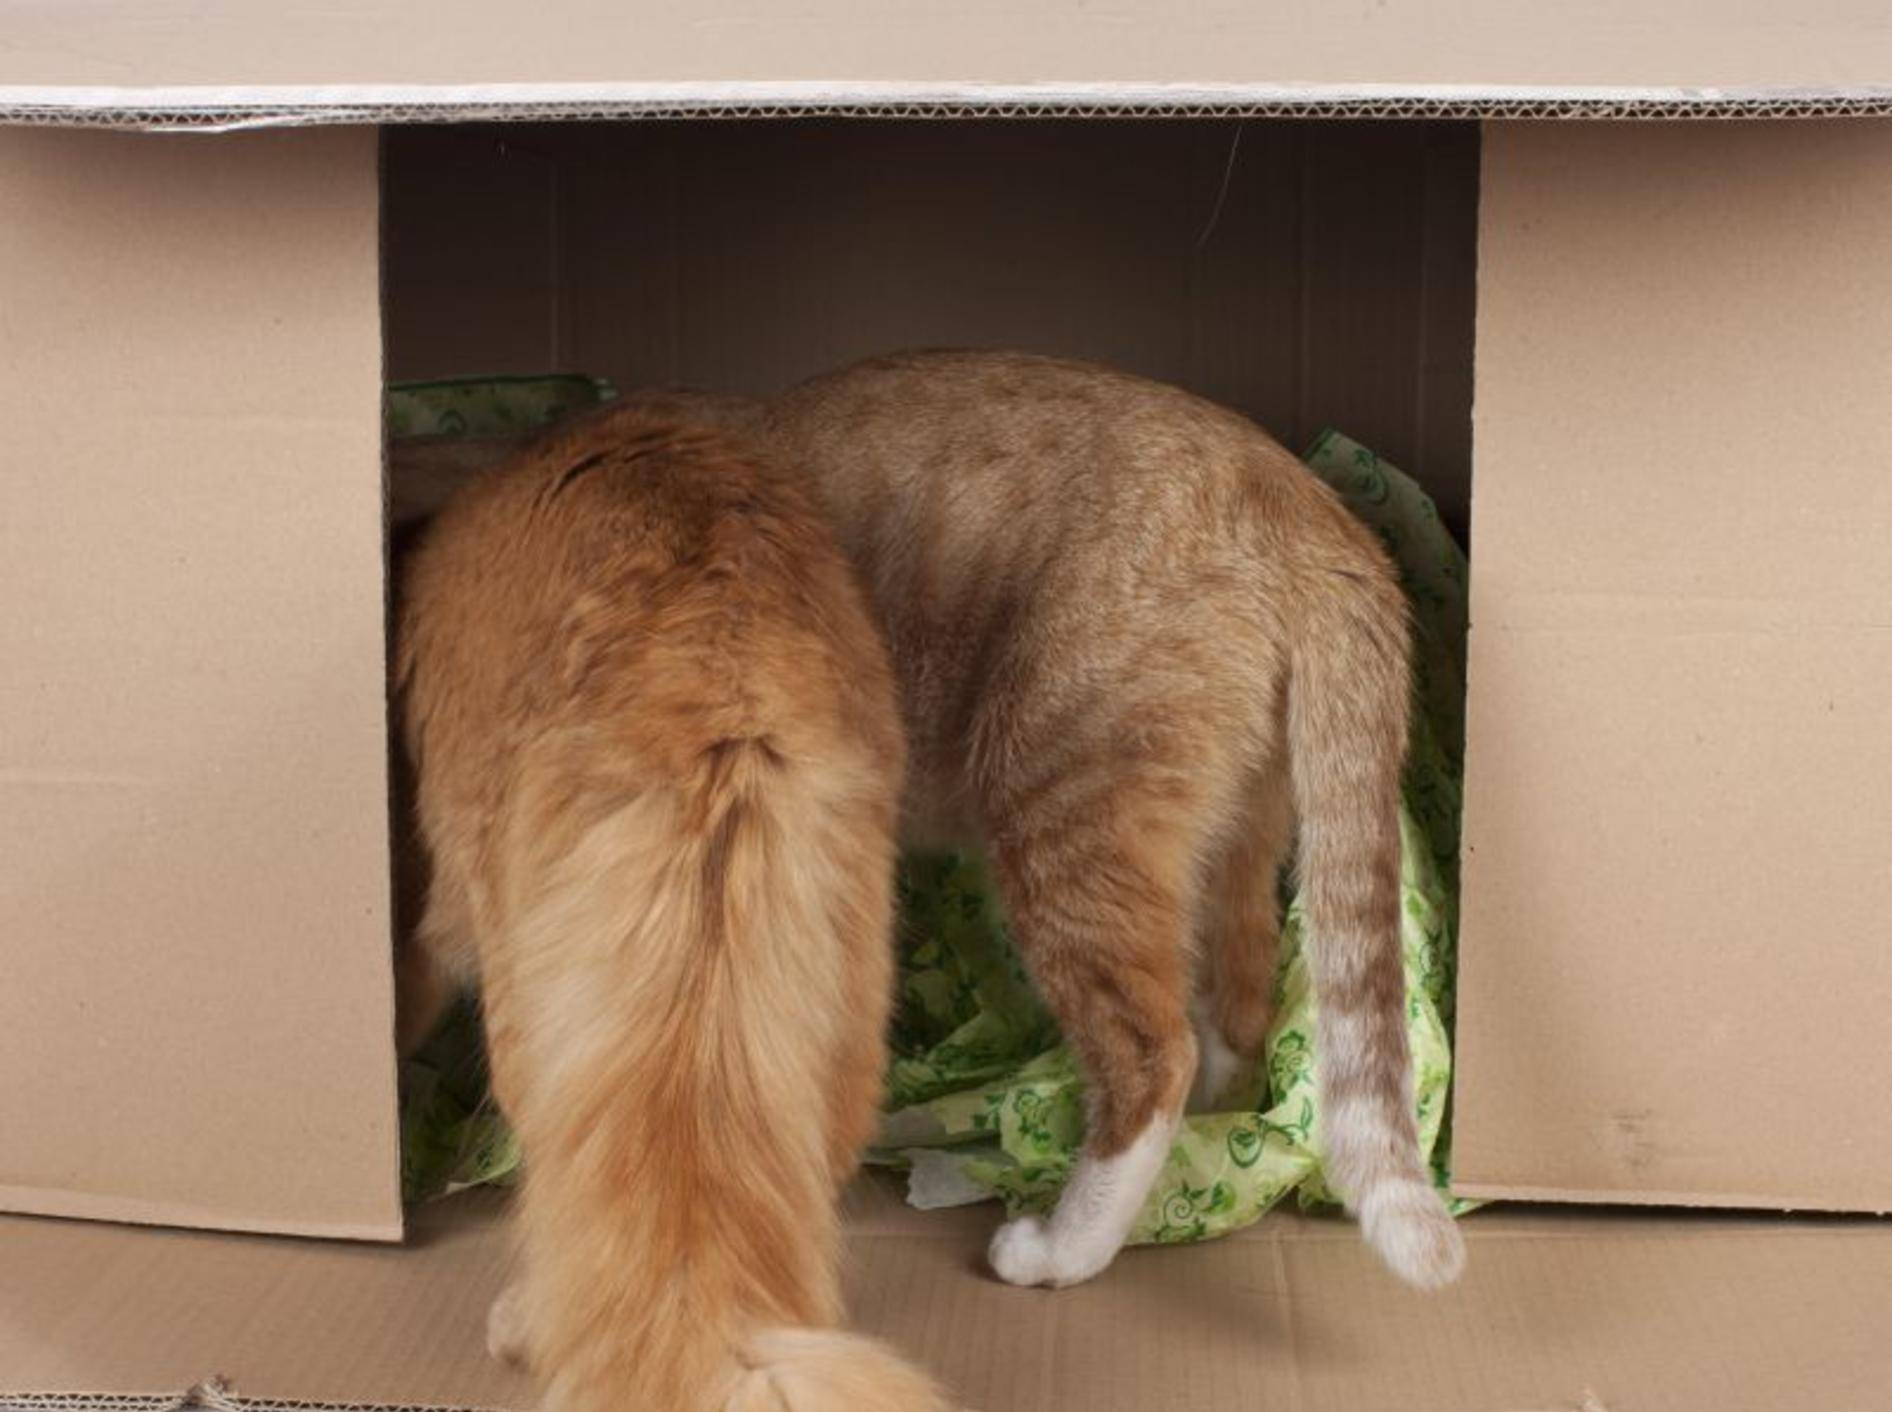 Katzen spielen gerne mit Kartons, vor allem, wenn sie tollen Inhalt haben – Bild: Shutterstock / absolutimages